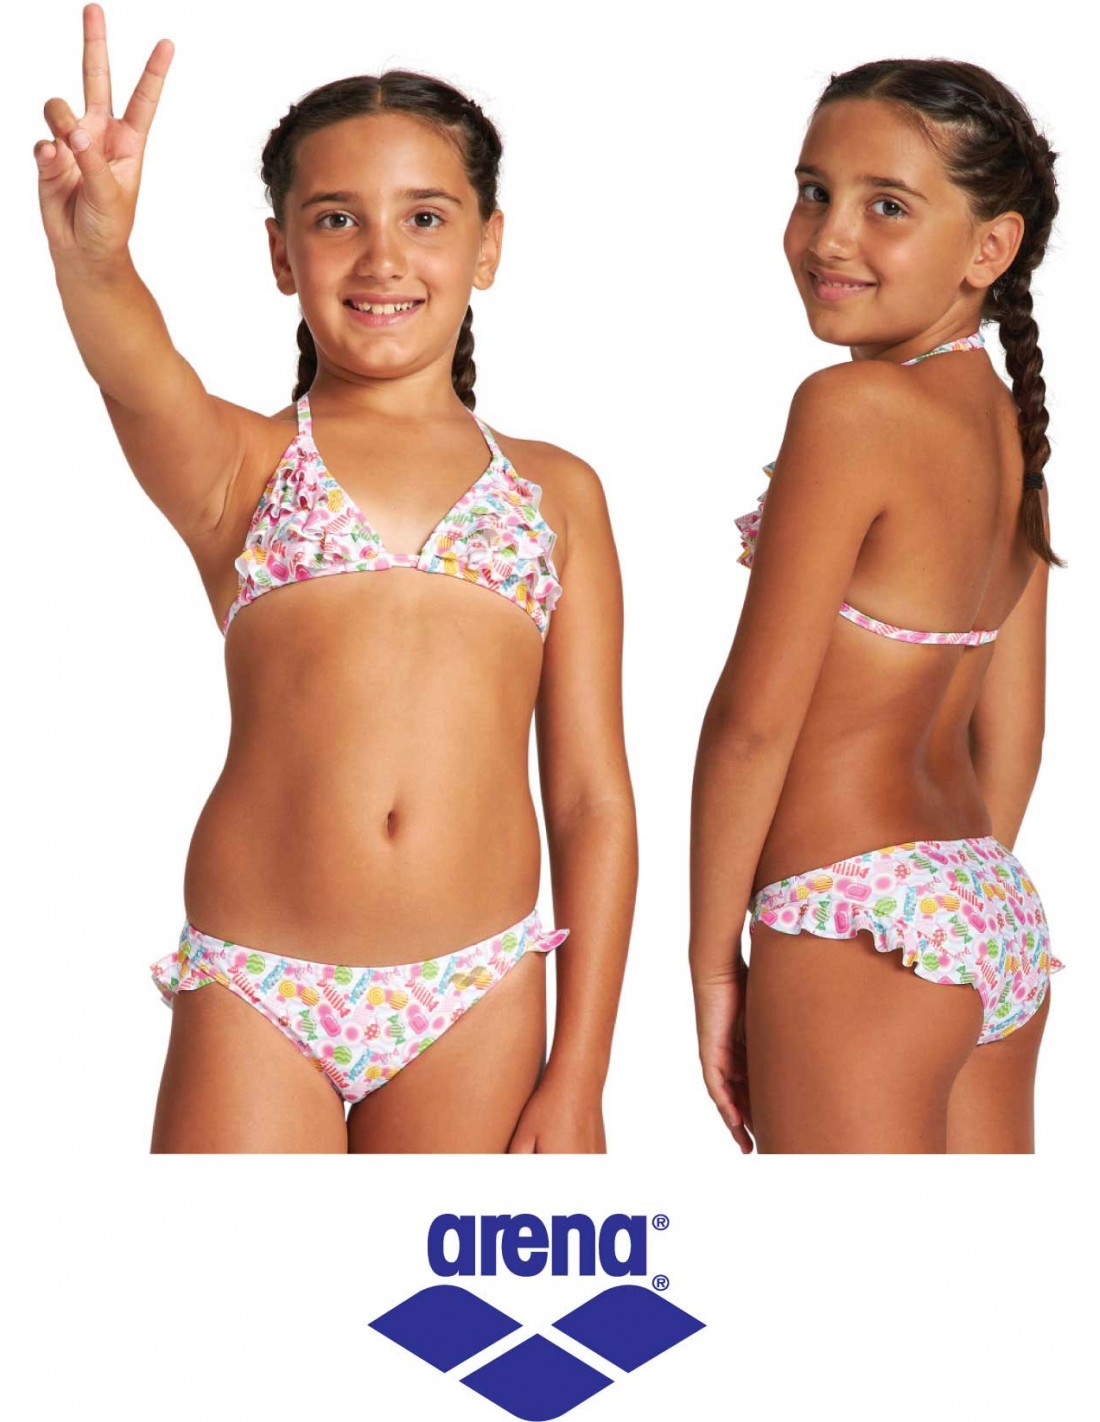 inlzdz Bikini Bambina Due Pezzi Costume da Bagno con Volant Costume da Bagno Mare Spiaggia Piscina Cop Top Mutande Swimsuit Beachwear 6-14 Anni 